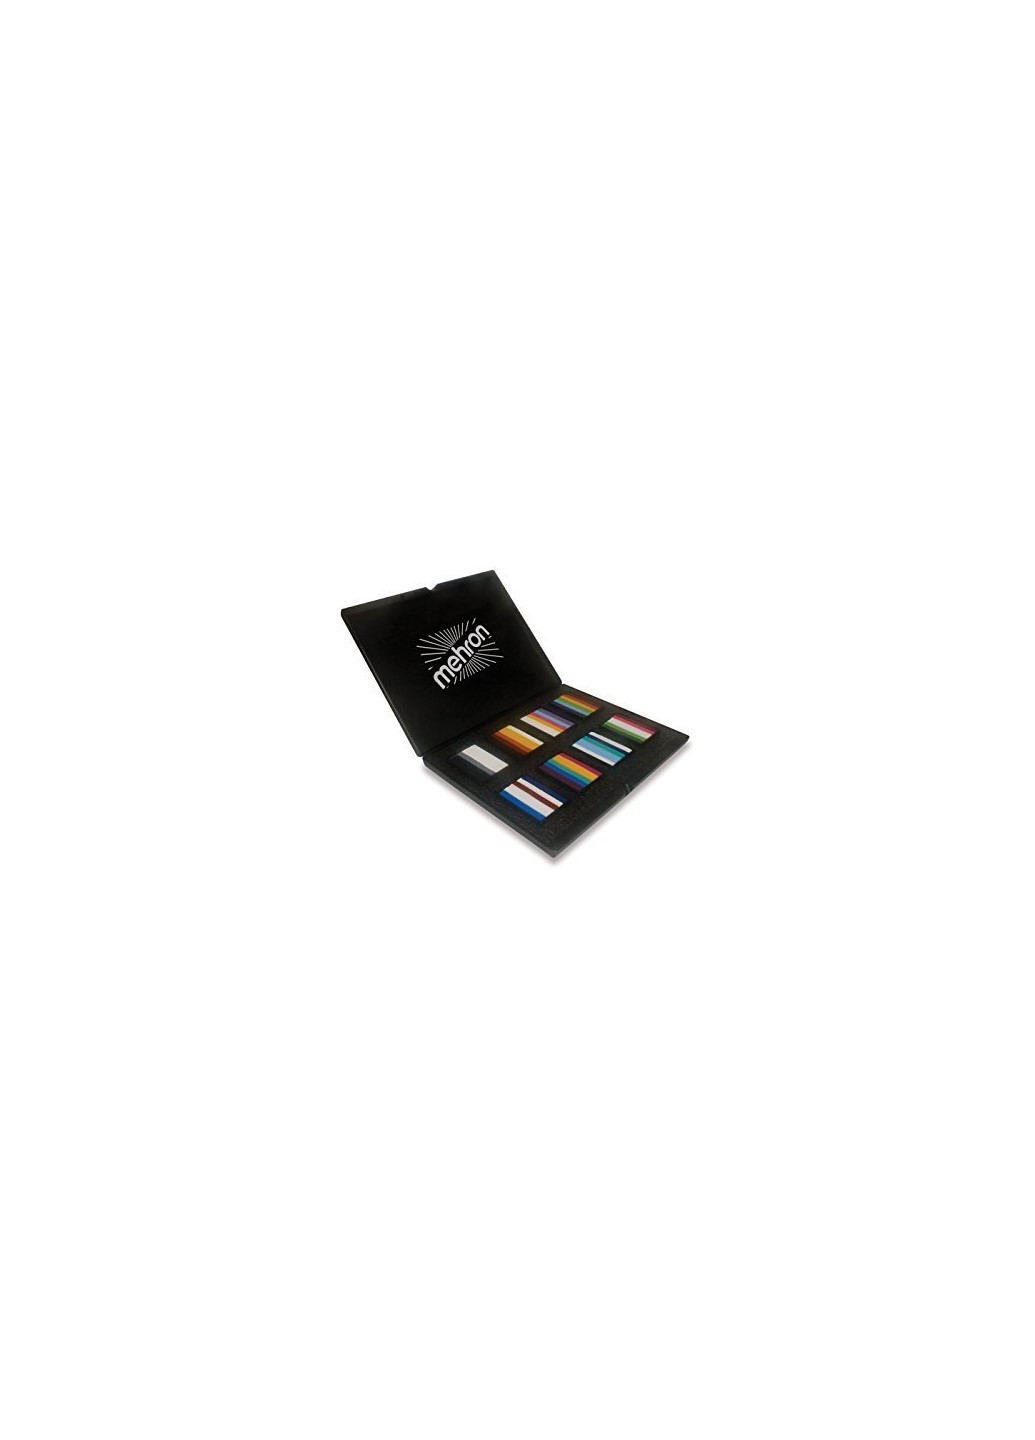 Набор аквагрима в кейсе Paradise Makeup AQ™ Prisma (8 расцветок по 50 г) Mehron (205593257)